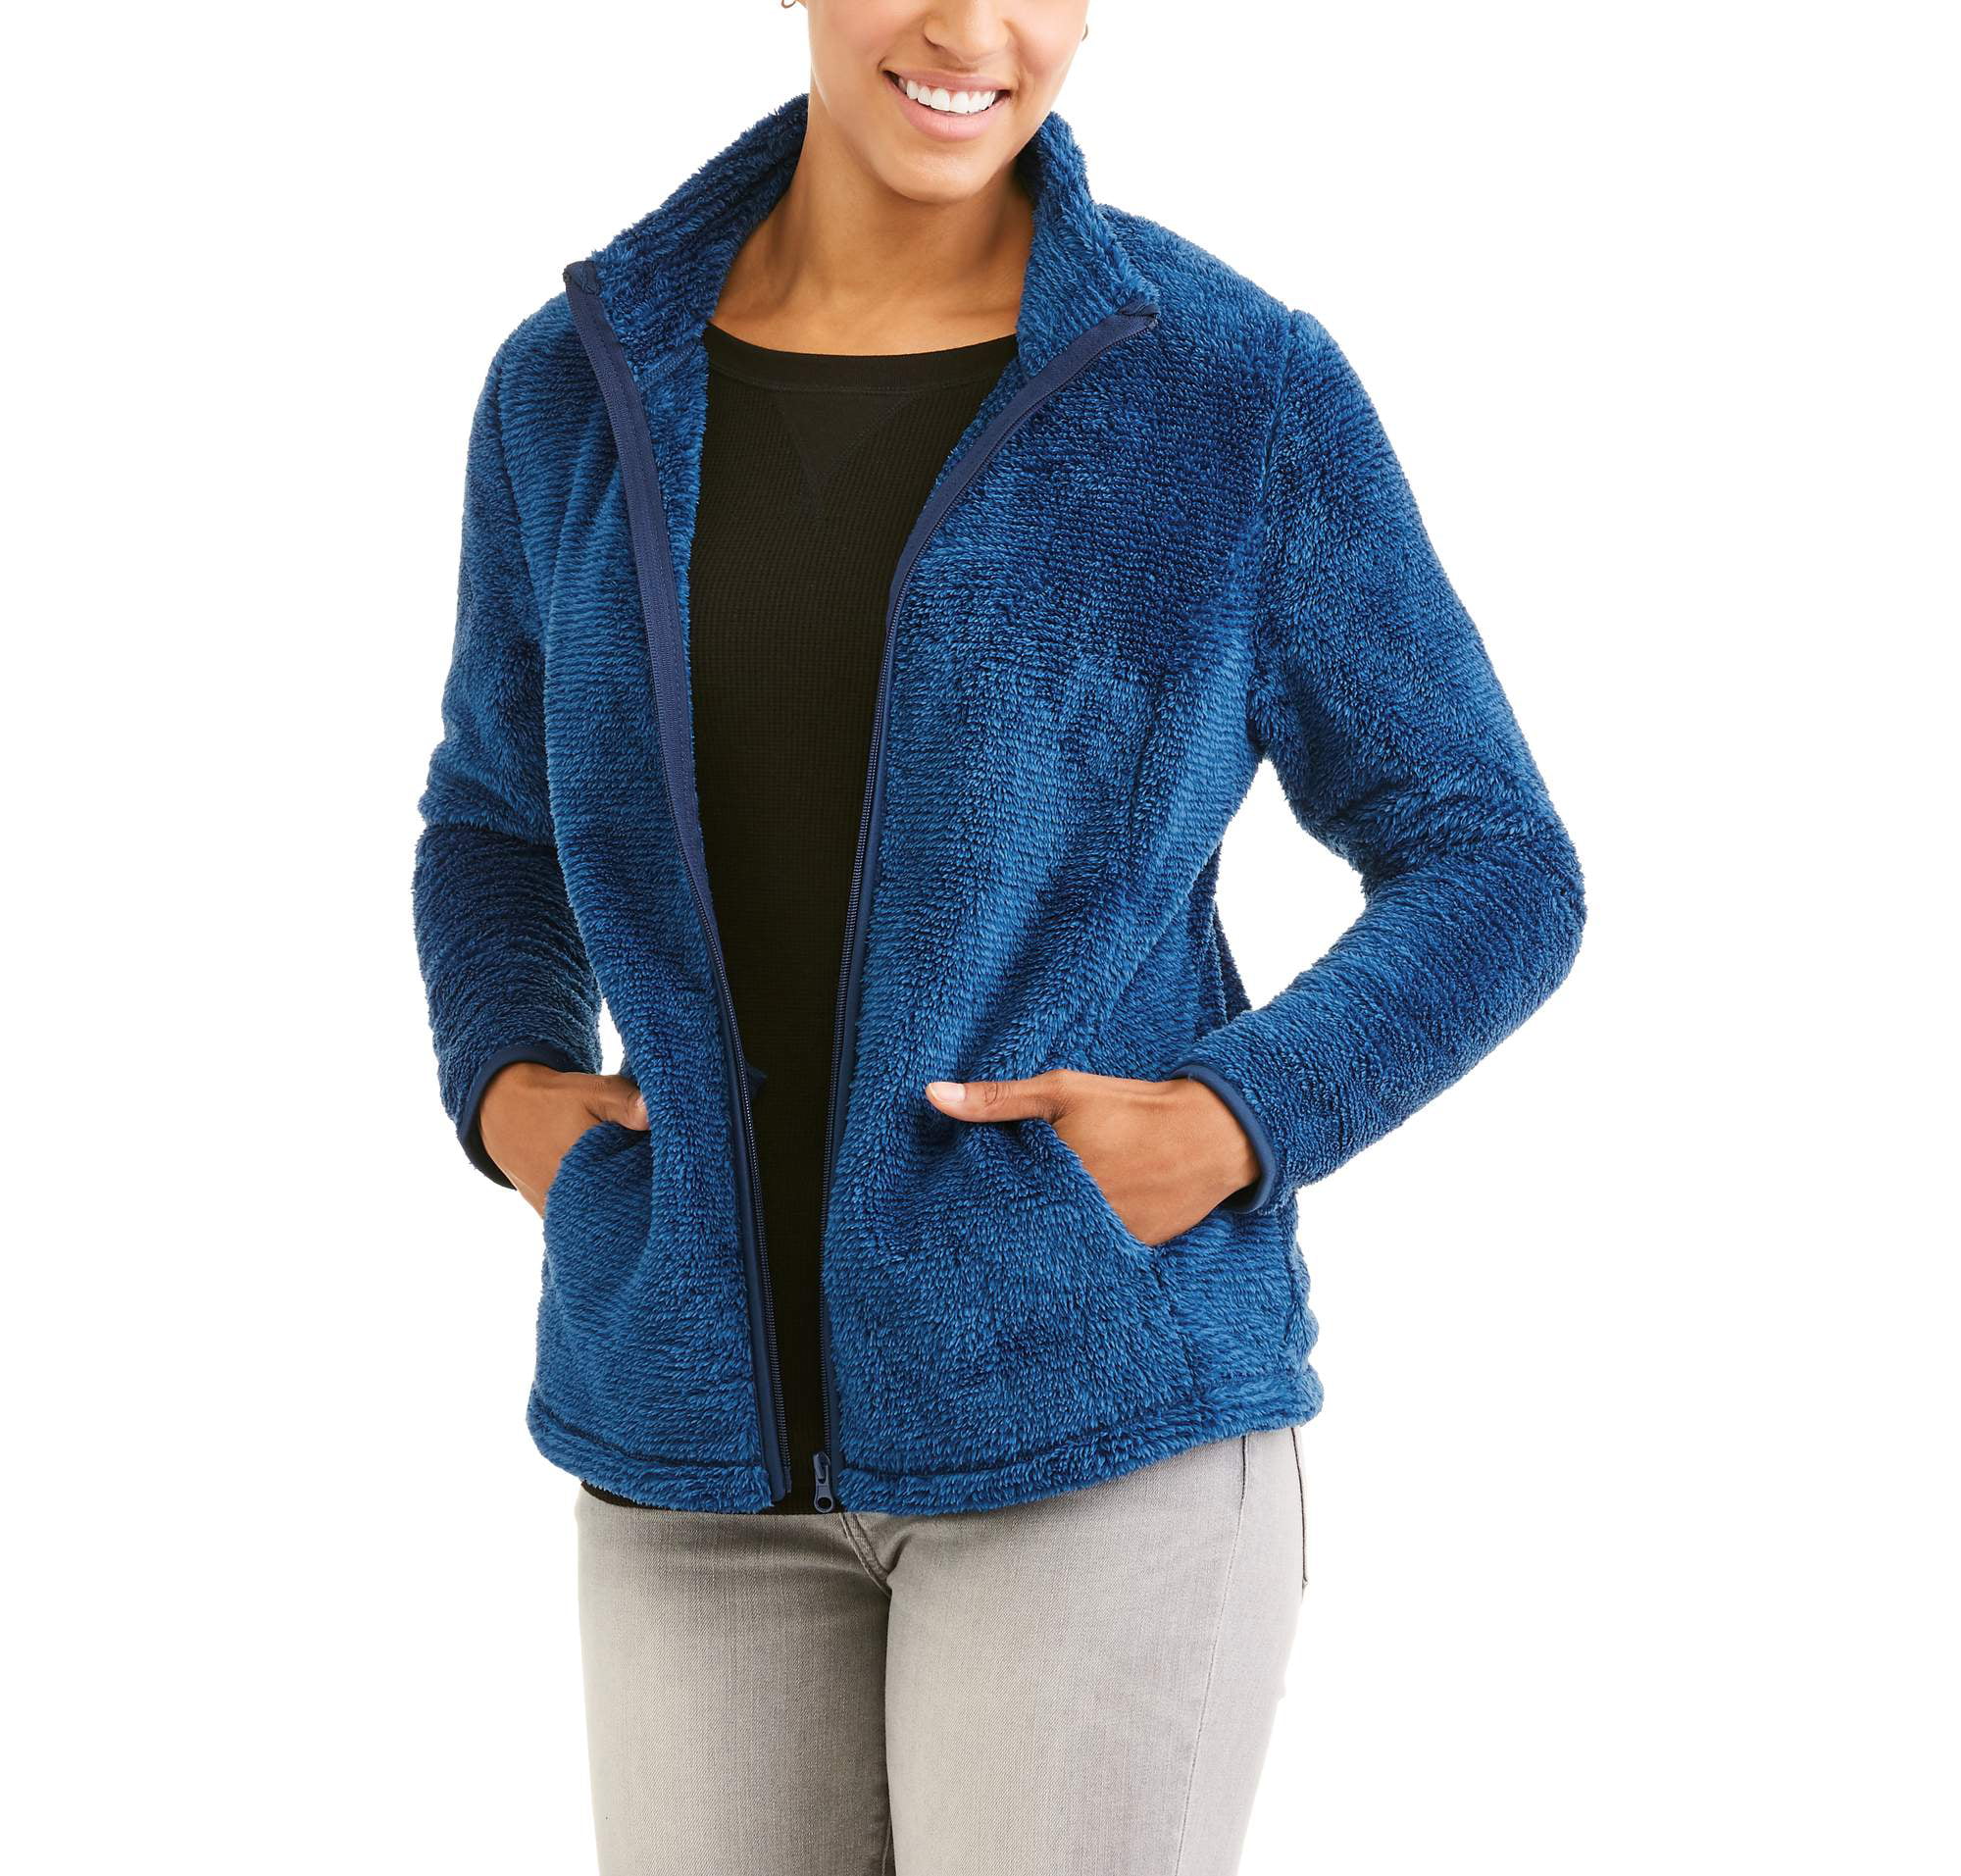 kop Verwachting Reis Women's Plush Sport Fleece Jacket - Walmart.com